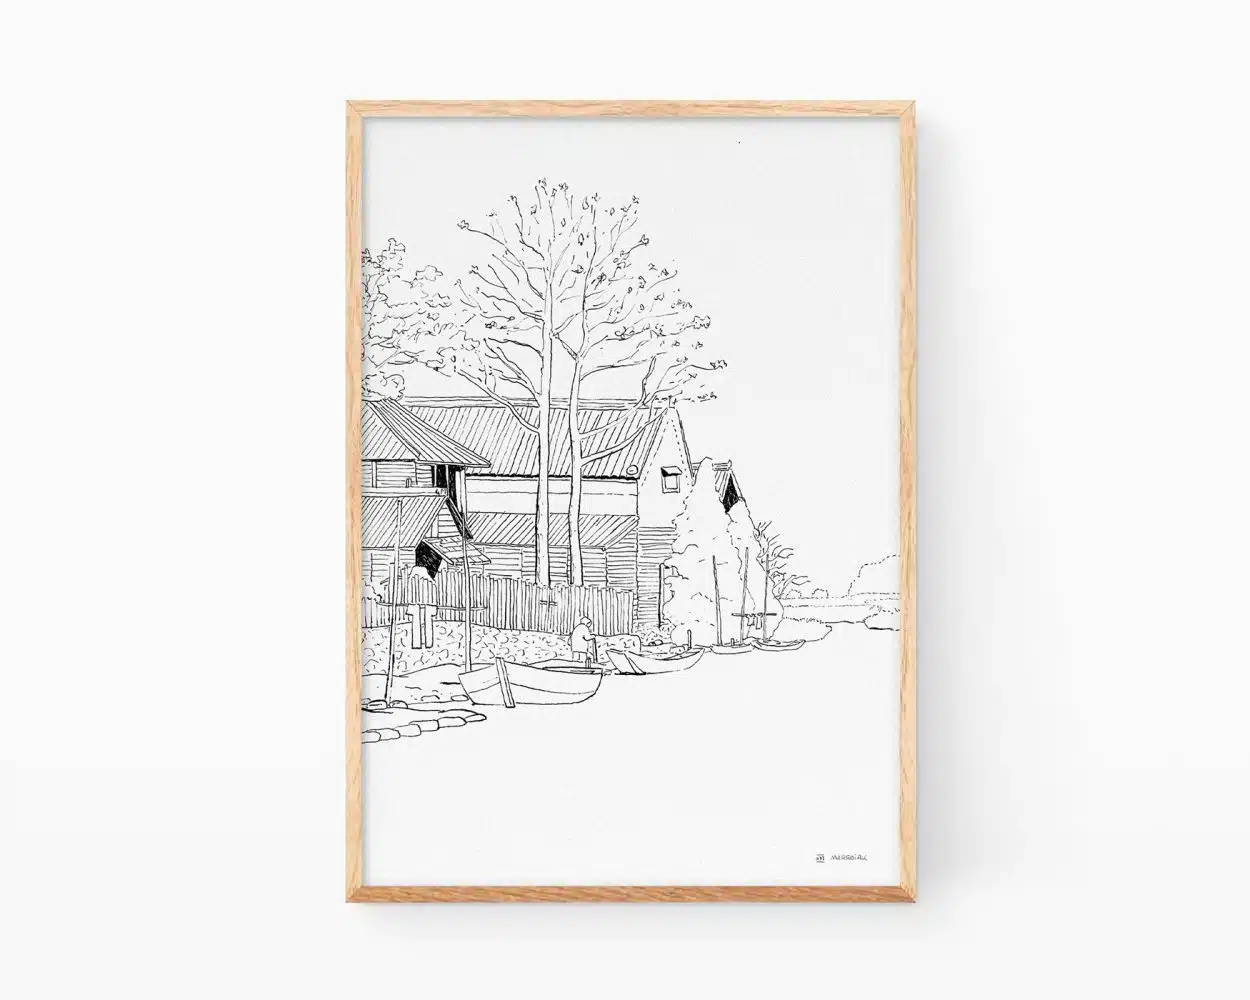 Cuadro decorativo ukiyo-e. Ilustración estampa japonesa de Hiroshi Yoshida versionado en blanco y negro. Dibujo en tinta. Noche en calma en un pueblo con río y barcos.